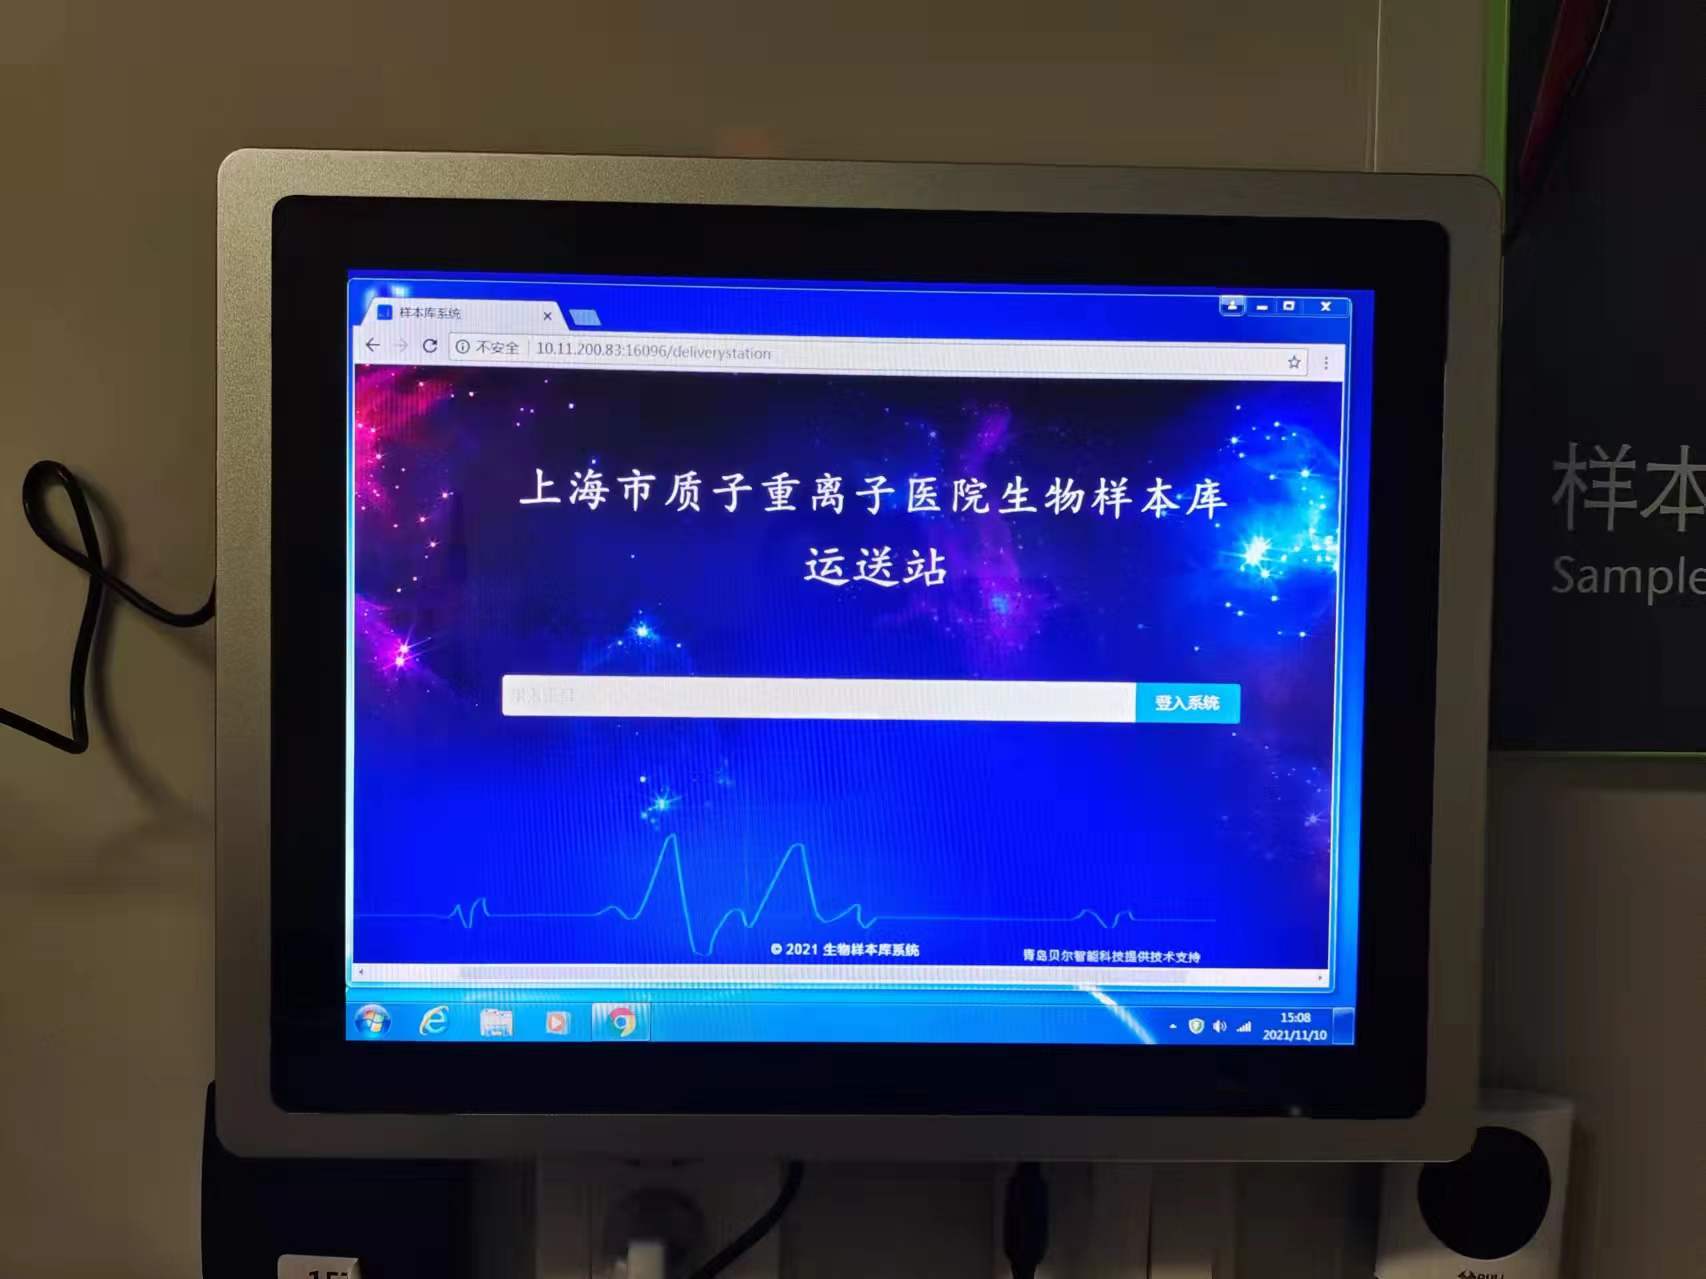 上海市质子重离子医院选择BEOL6163银河生物样本库管理软件保存生物样本22.5.13